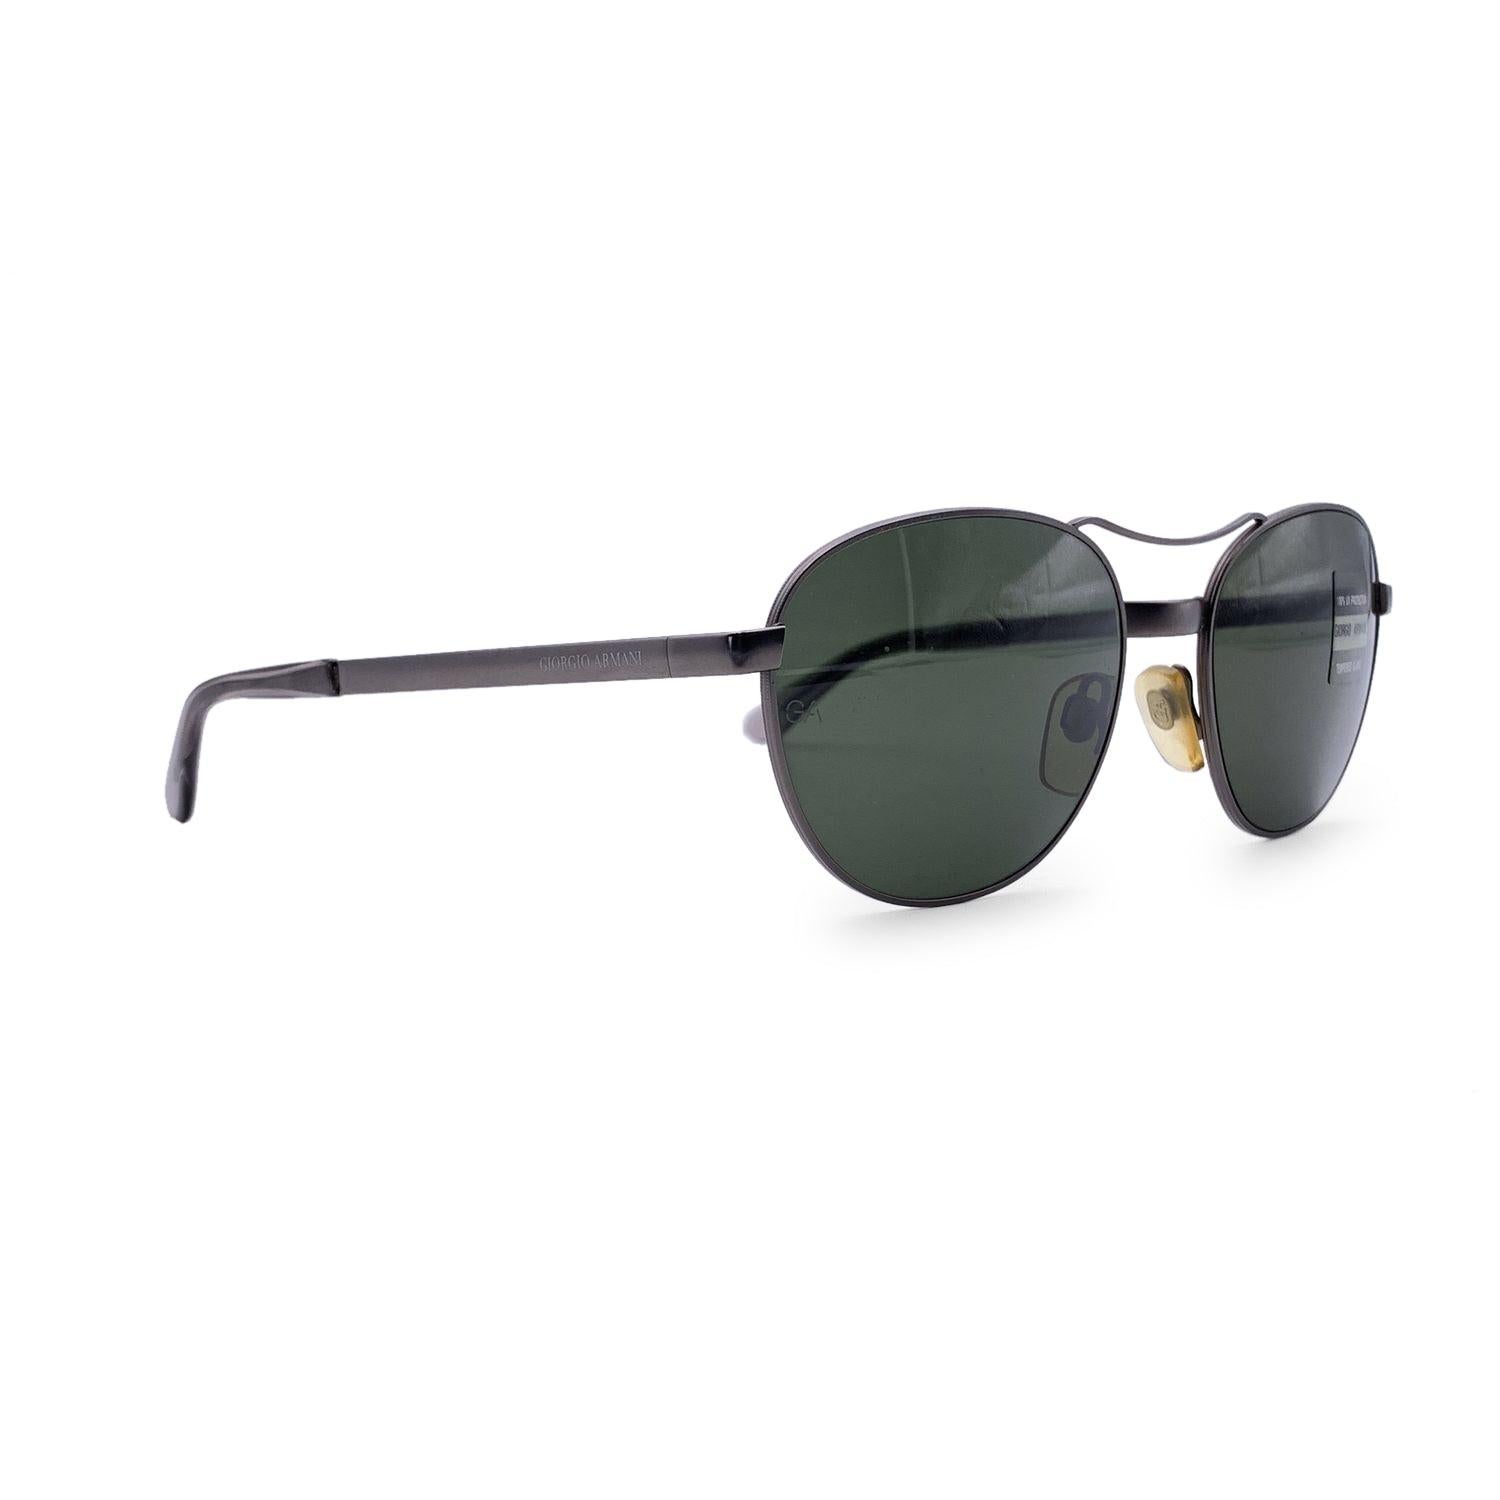 Giorgio Armani Vintage Gunmetal Sunglasses 644 905 135 mm In Excellent Condition For Sale In Rome, Rome